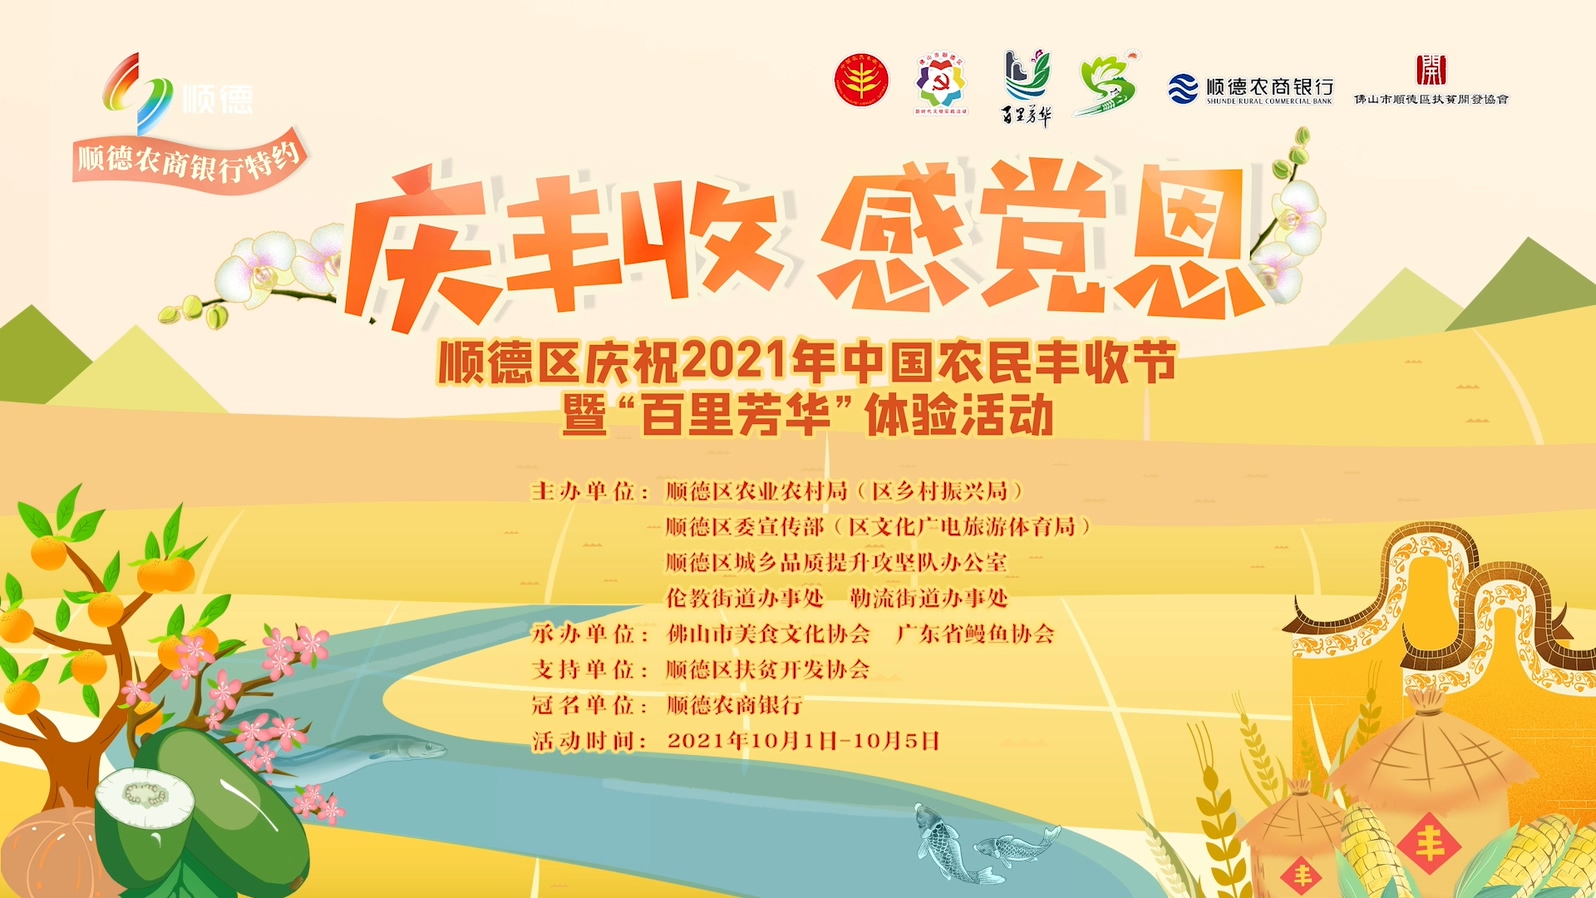 顺德将举办庆祝2021年中国农民丰收节暨“百里芳华”体验活动